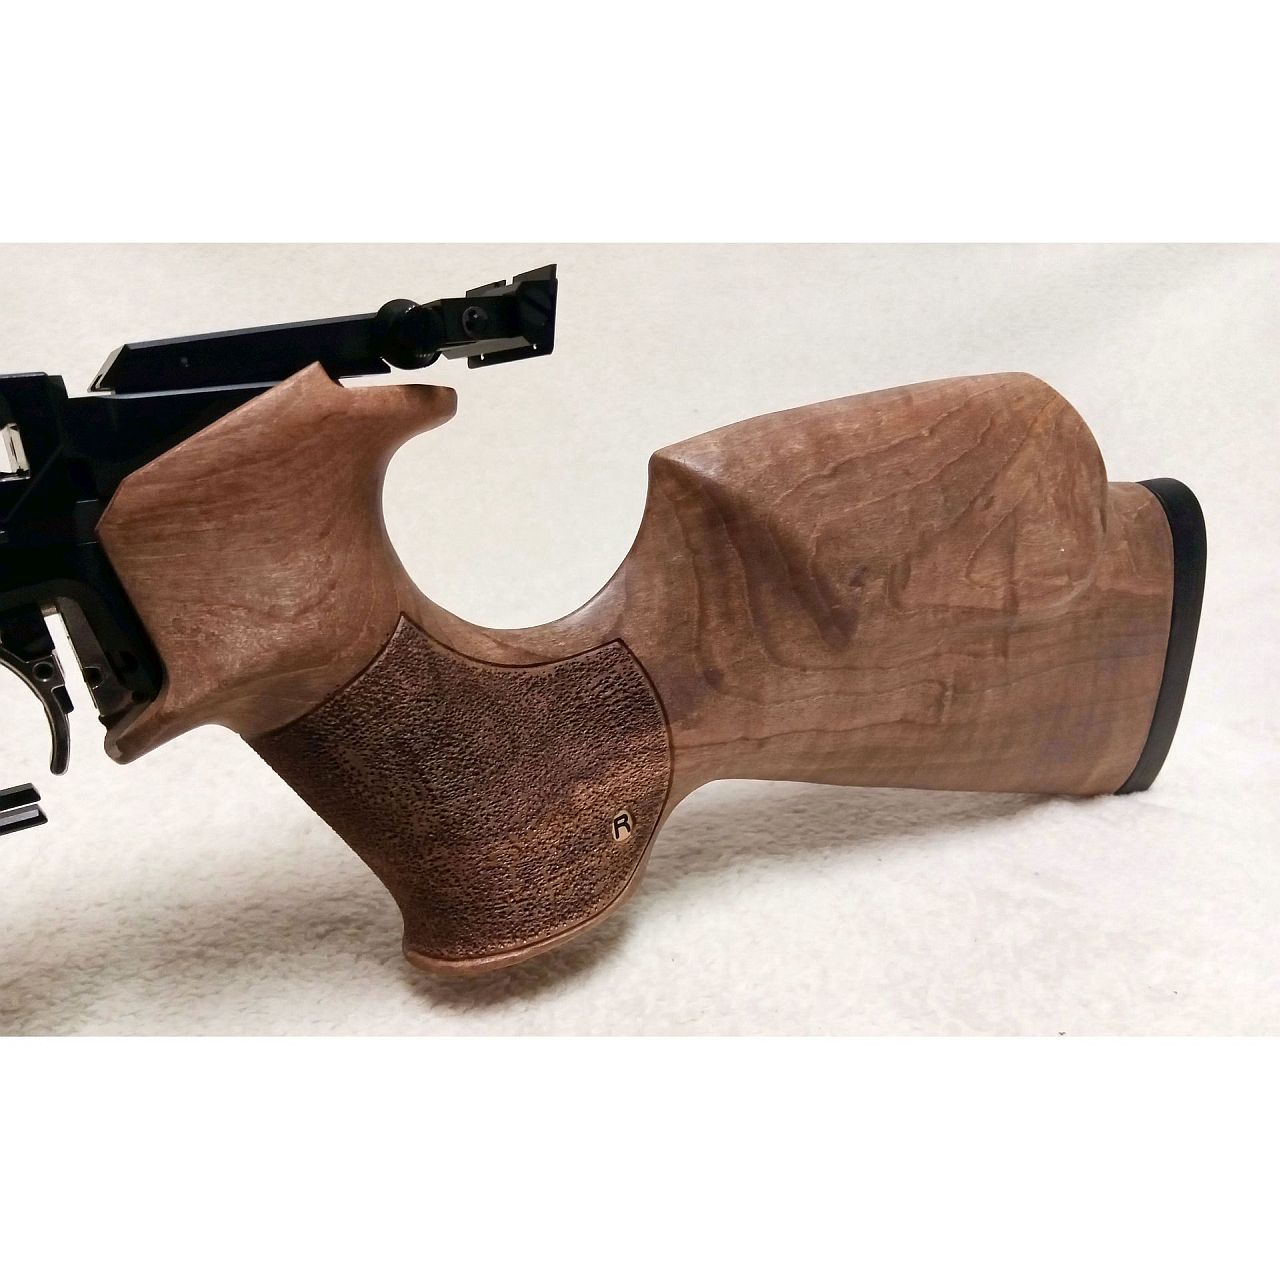 Shoulder stock for handguns